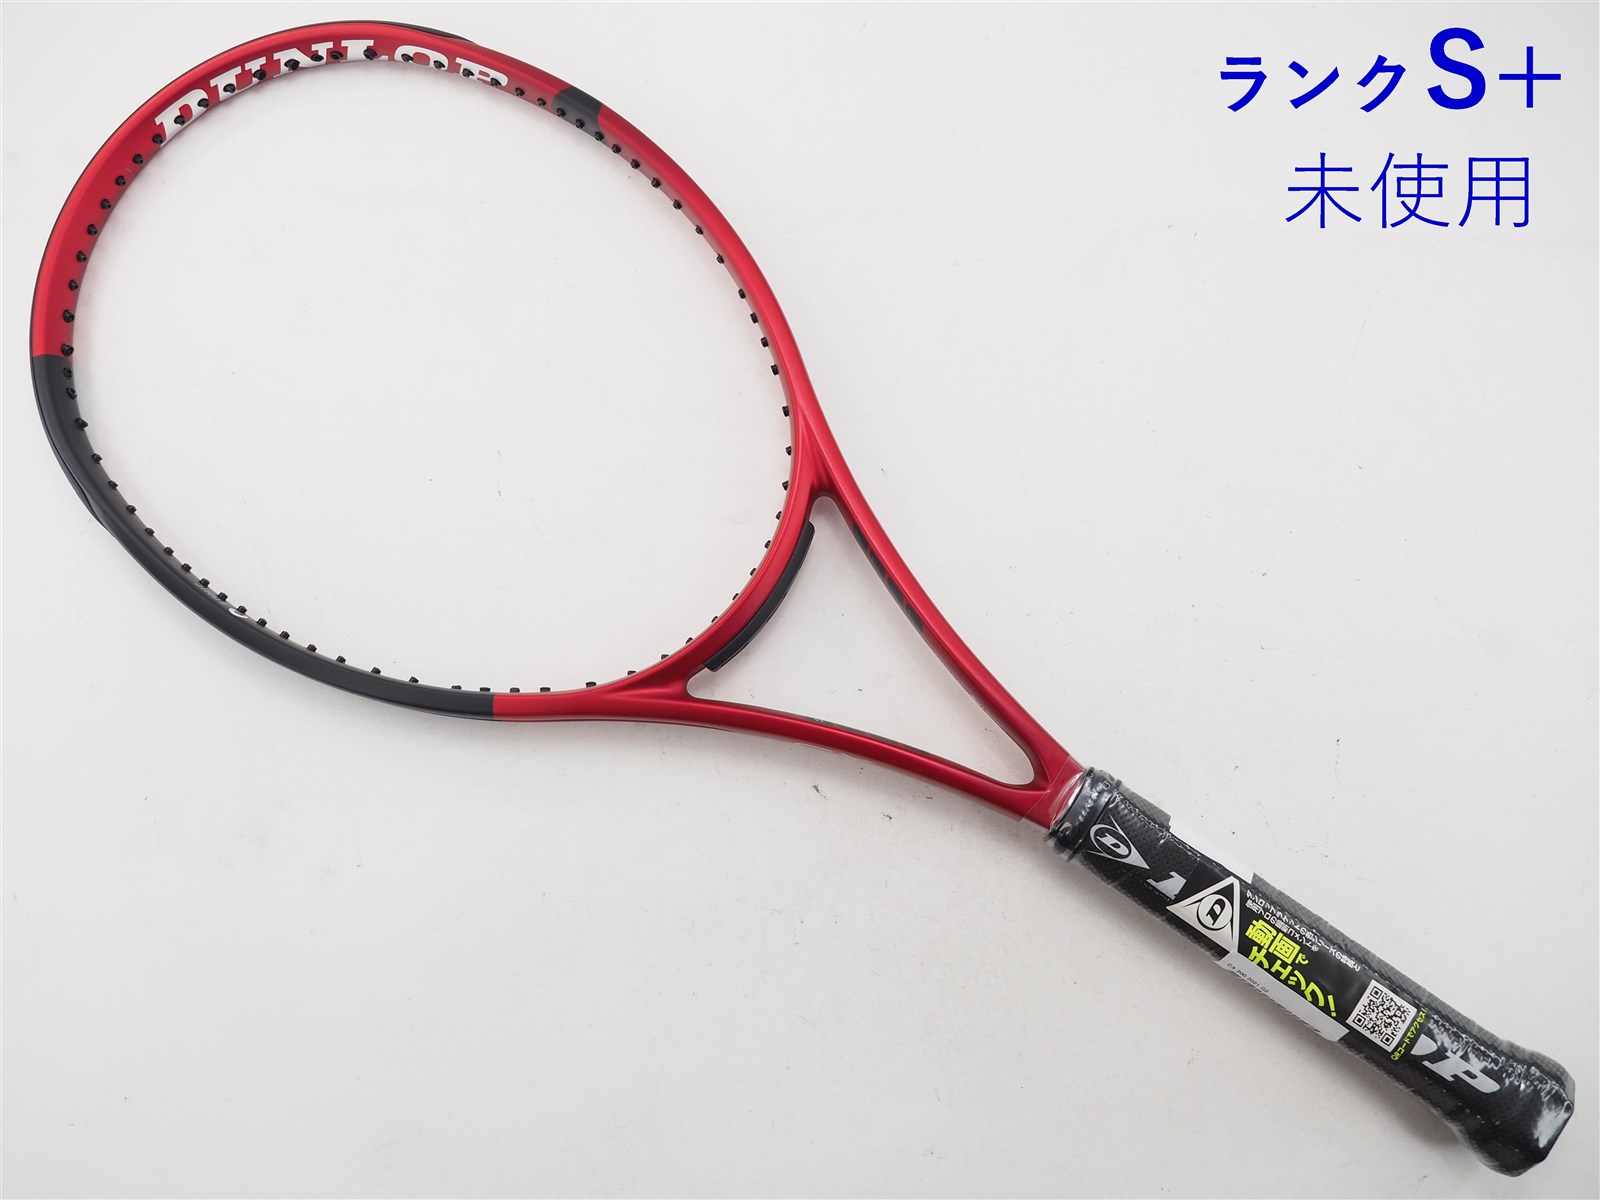 ダンロップ シーエックス 200 2021年モデルDUNLOP CX 200 2021(G2)【テニスラケット】【送料無料】の通販・販売| ダンロップ|  テニスサポートセンターへ